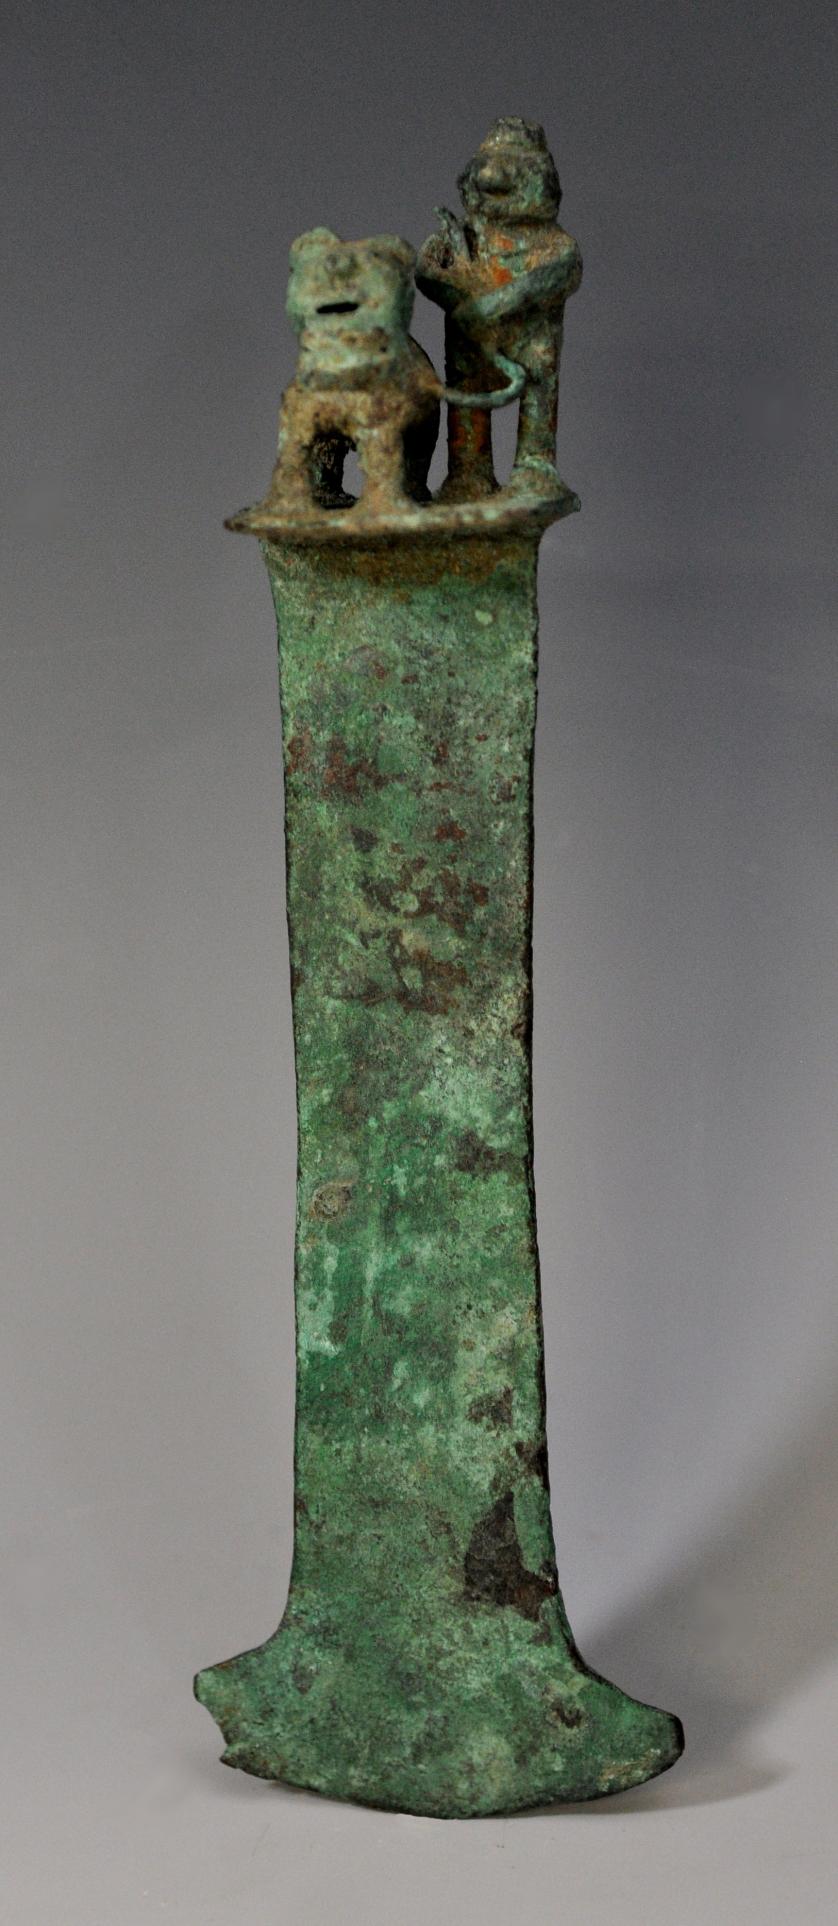 2064   -  ARQUEOLOGÍA. PREHISPÁNICO. Tumi con guerrero y una fiera atada. Cultura Moche (150-700 d. C.). Bronce. Longitud 18 cm.